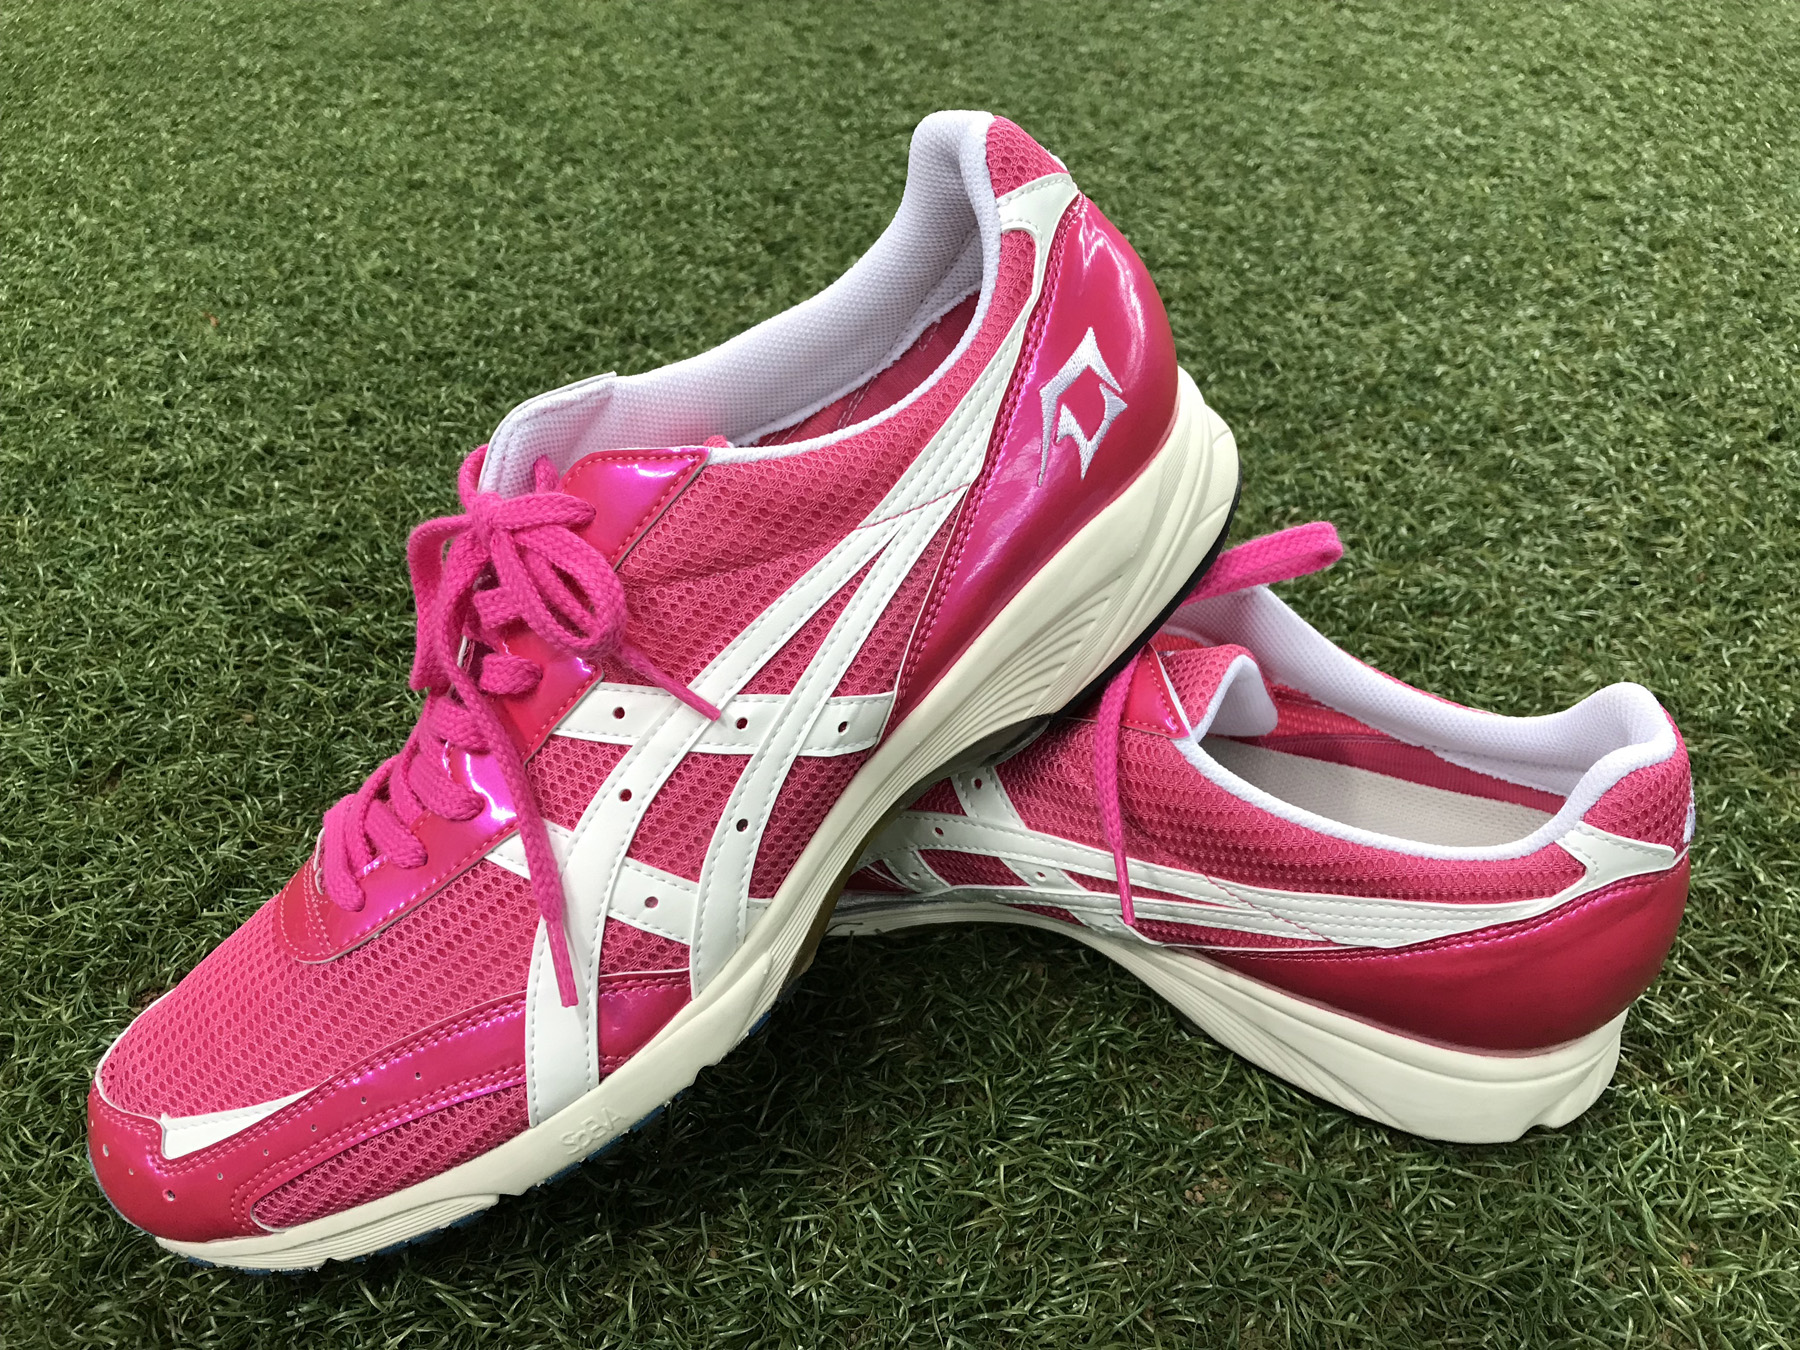 ダルビッシュ有選手にピンク色の野球用具を提供 アシックスジャパンのプレスリリース